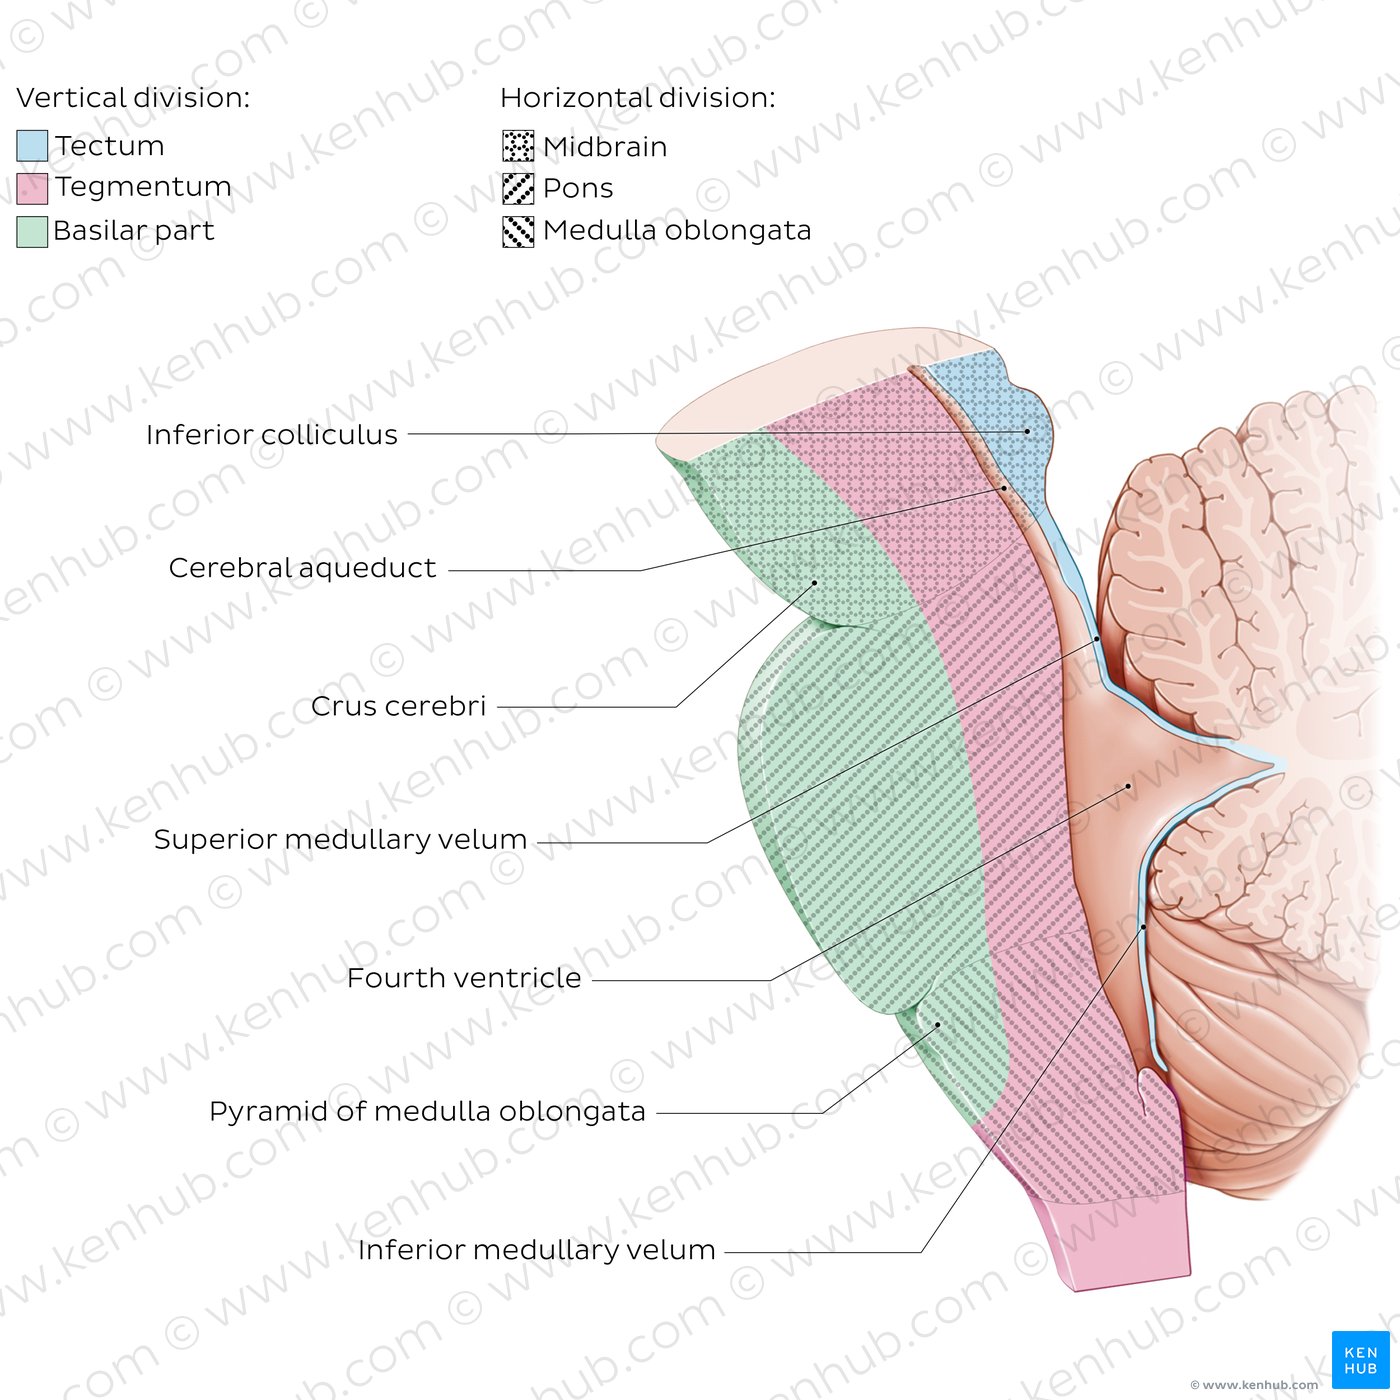 Brainstem tectum and tegmentum